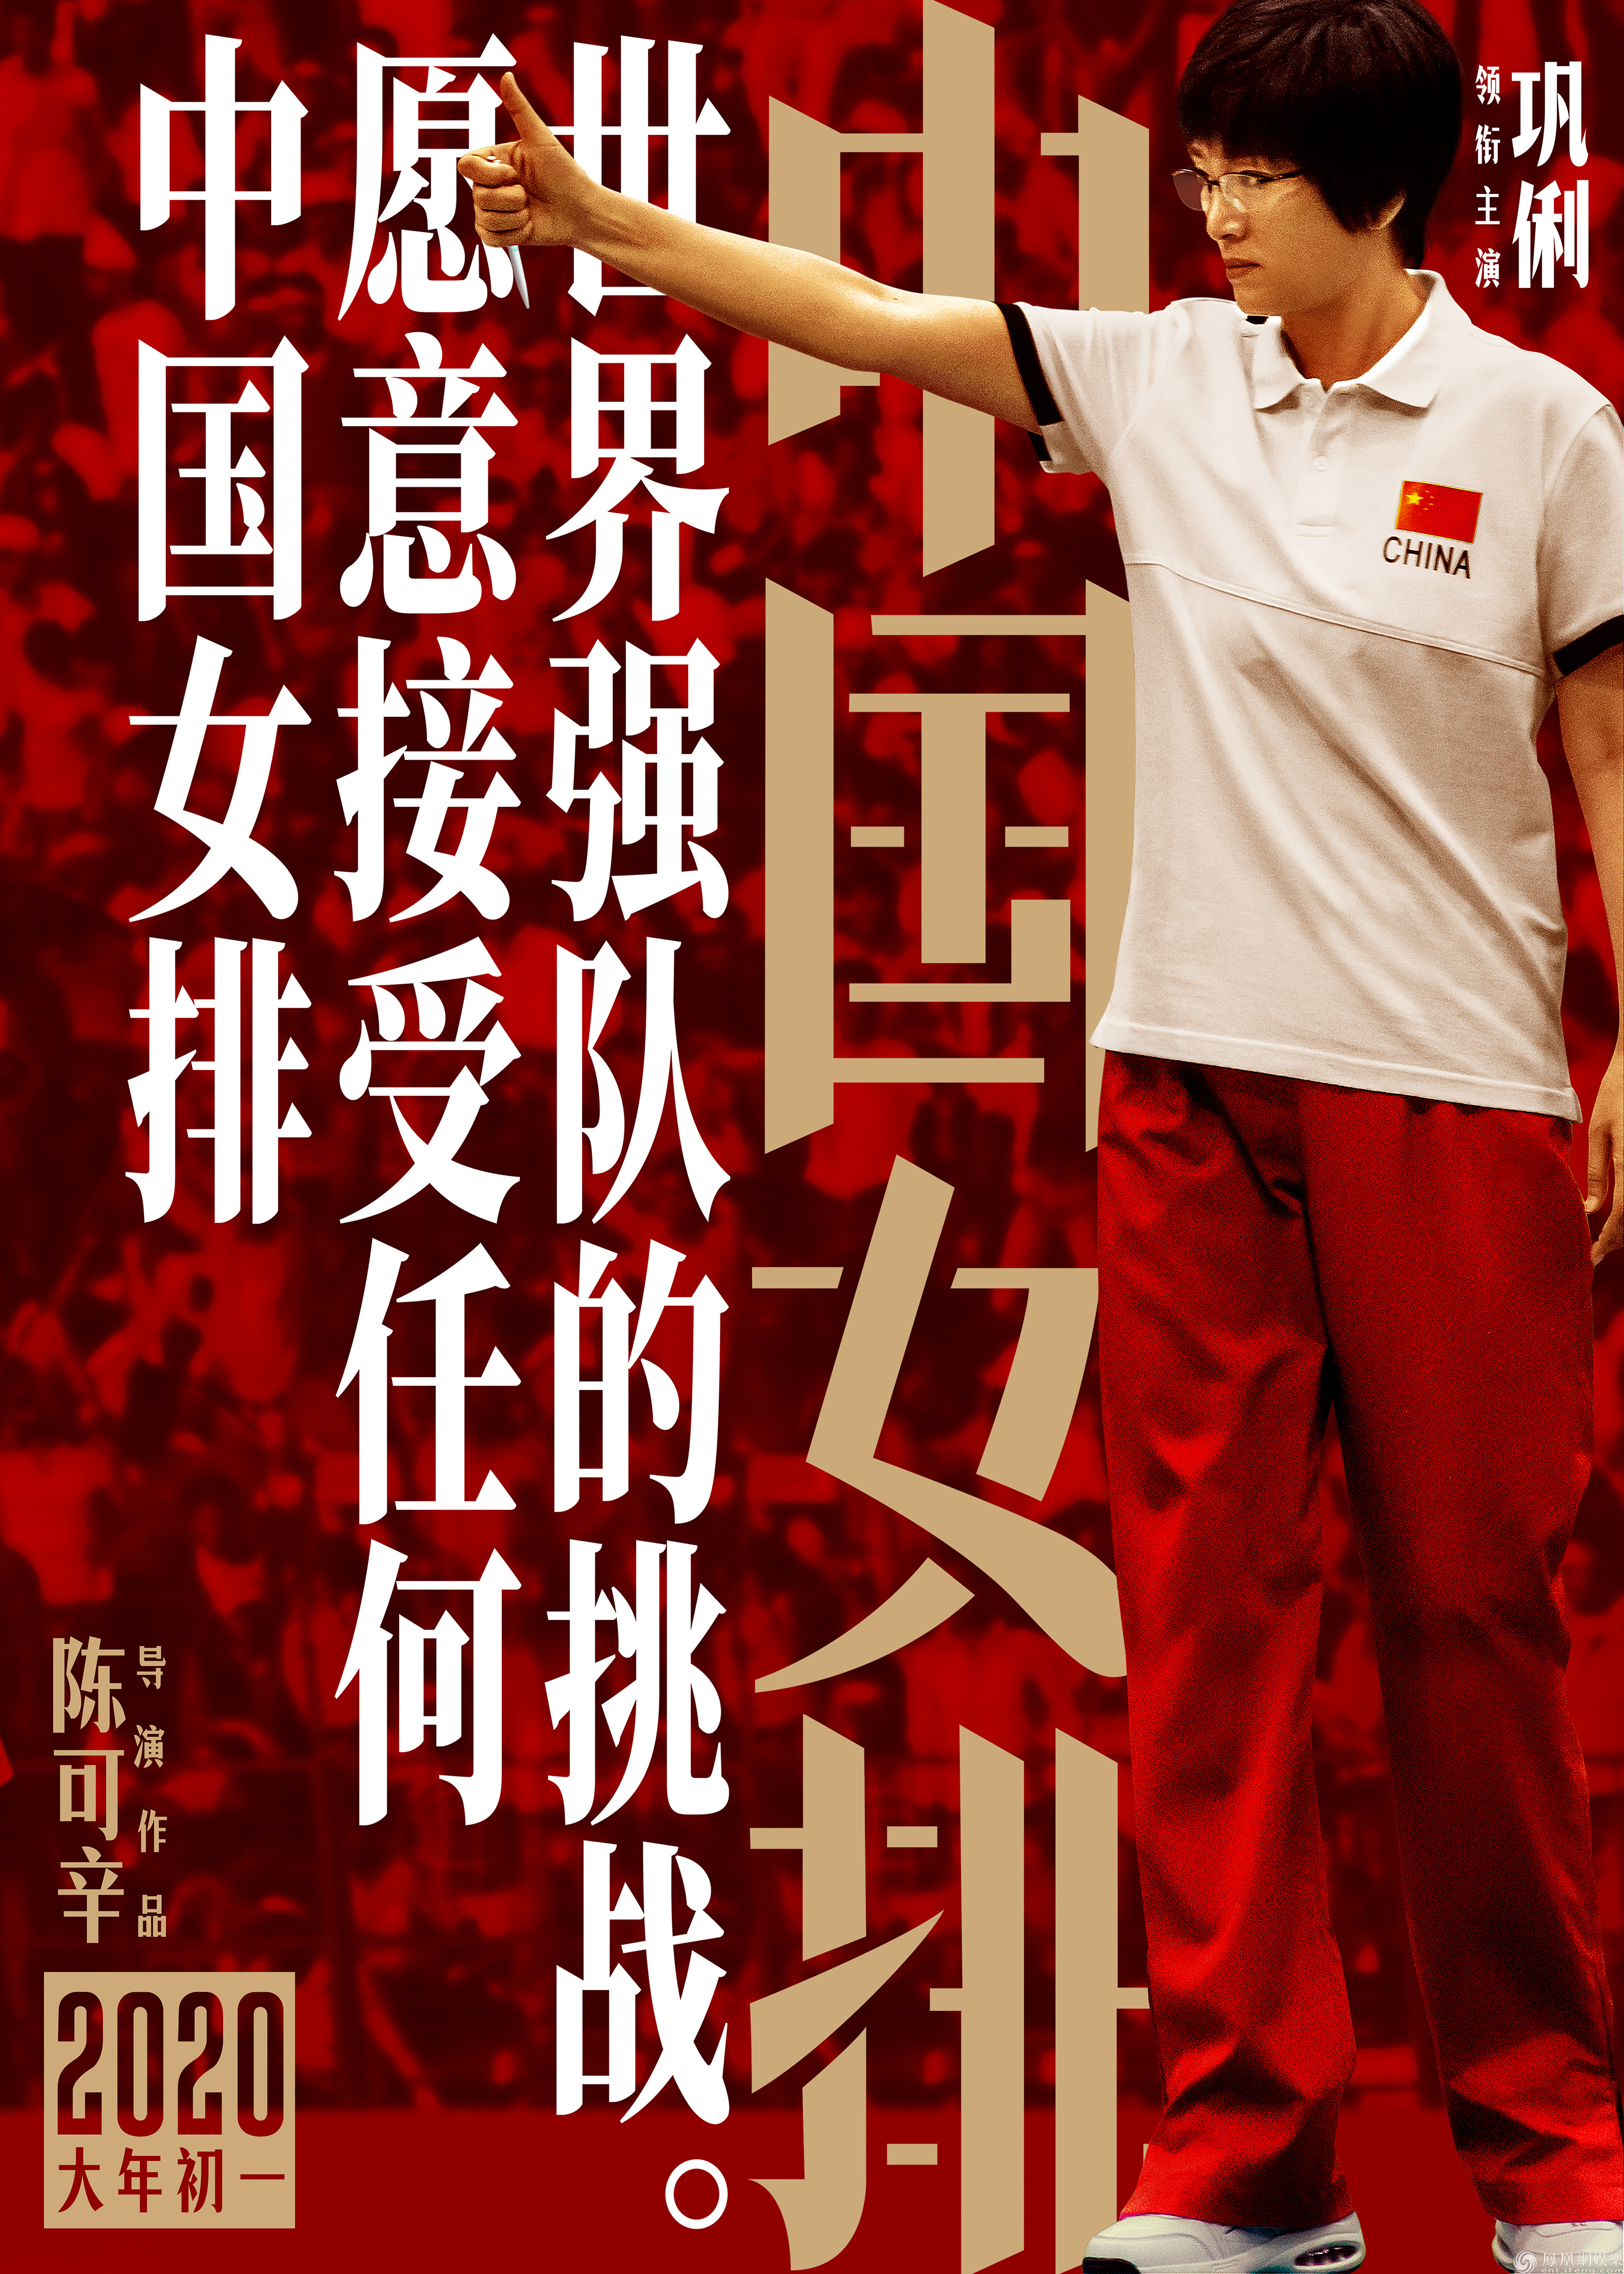 《中国女排》曝态度版海报 冠军教头也有柔情